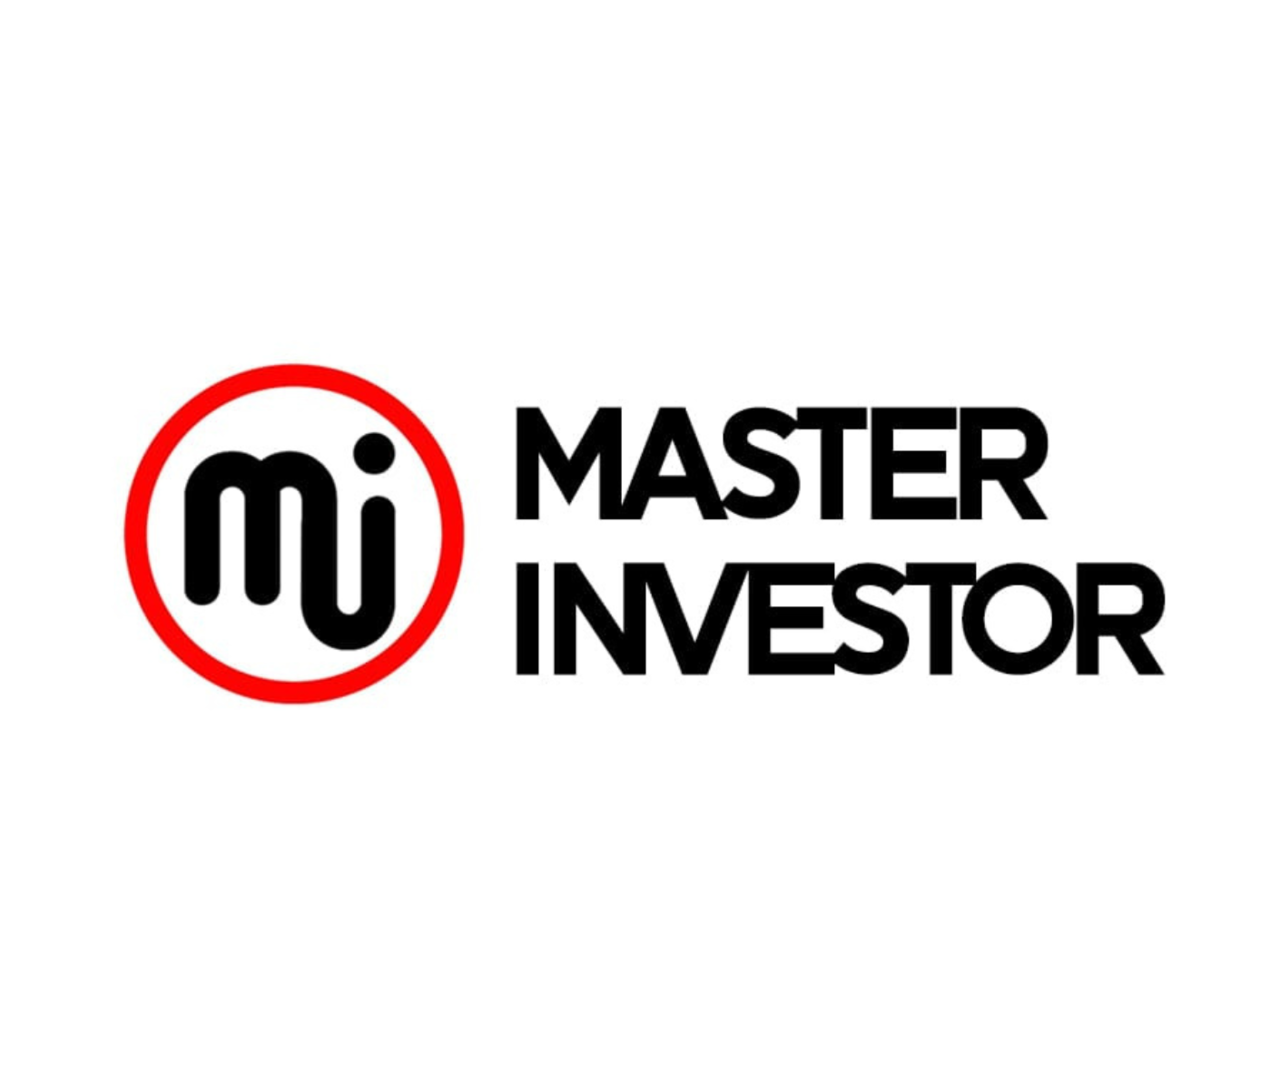 Master Investor’s Newsletter